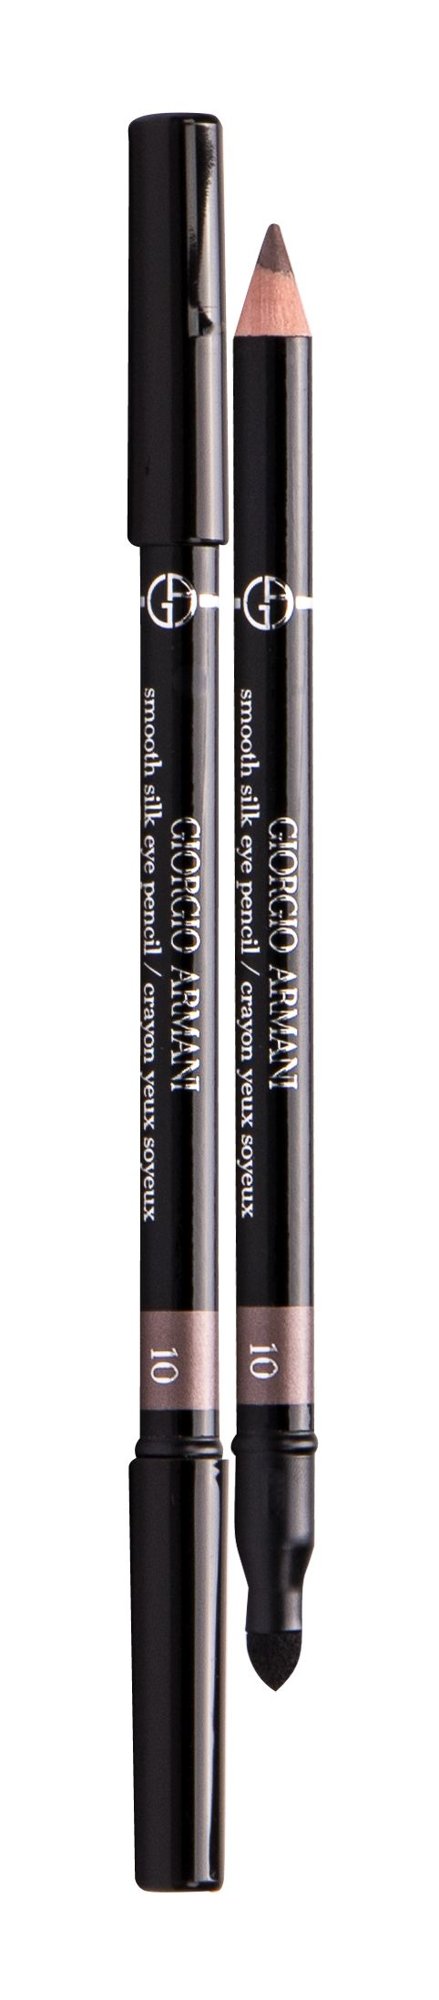 Giorgio Armani Smooth Silk 10,5g akių pieštukas